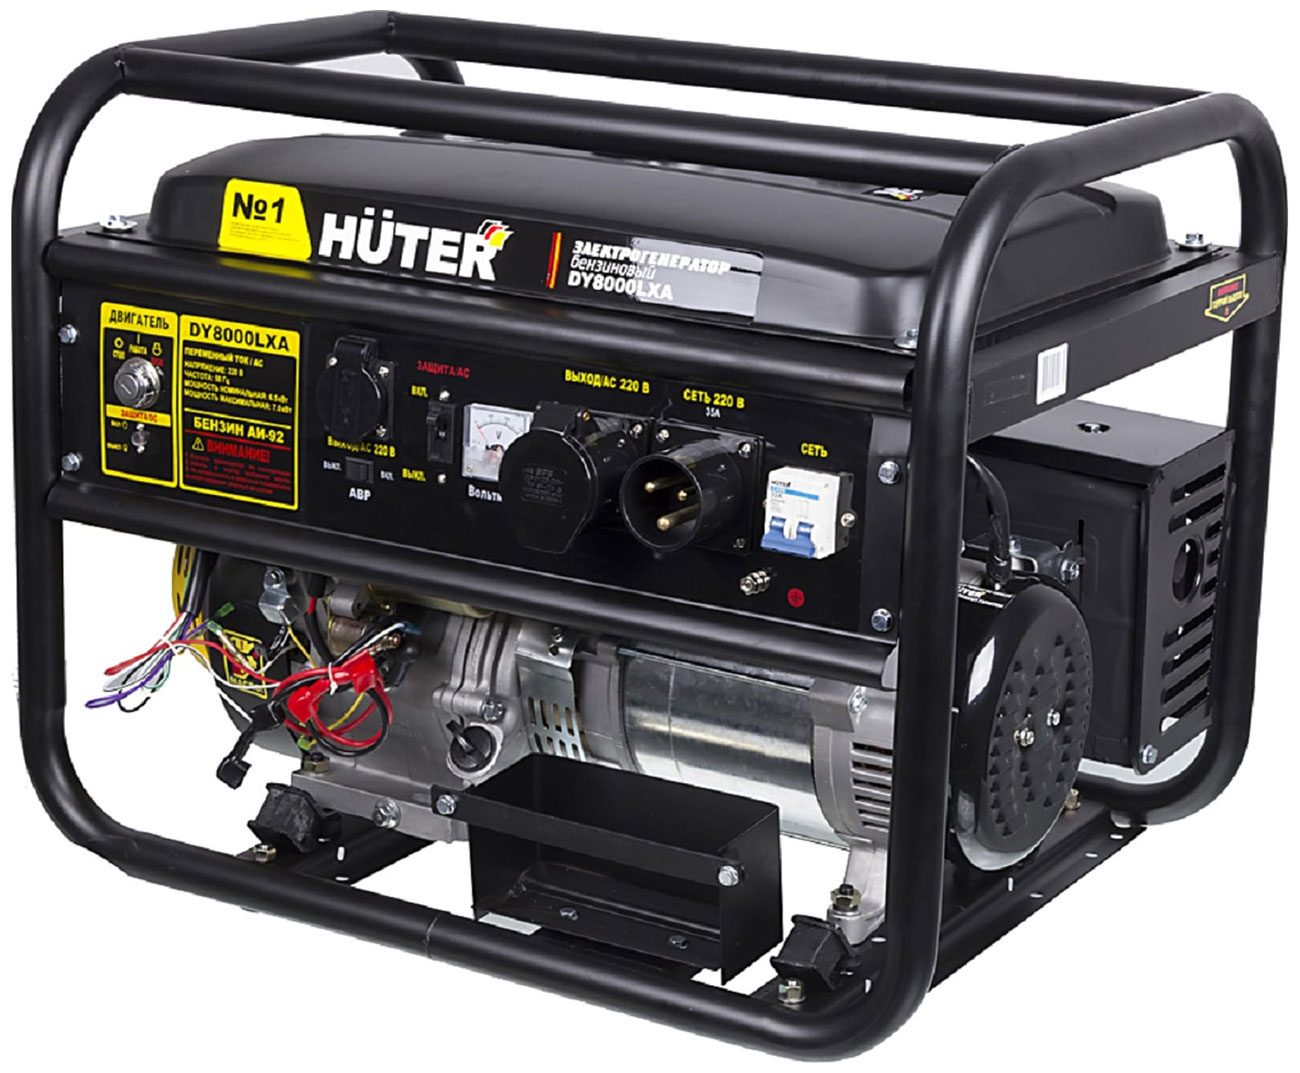 электрический генератор и электростанция huter ht 950 a Электрический генератор и электростанция Huter DY8000LXA